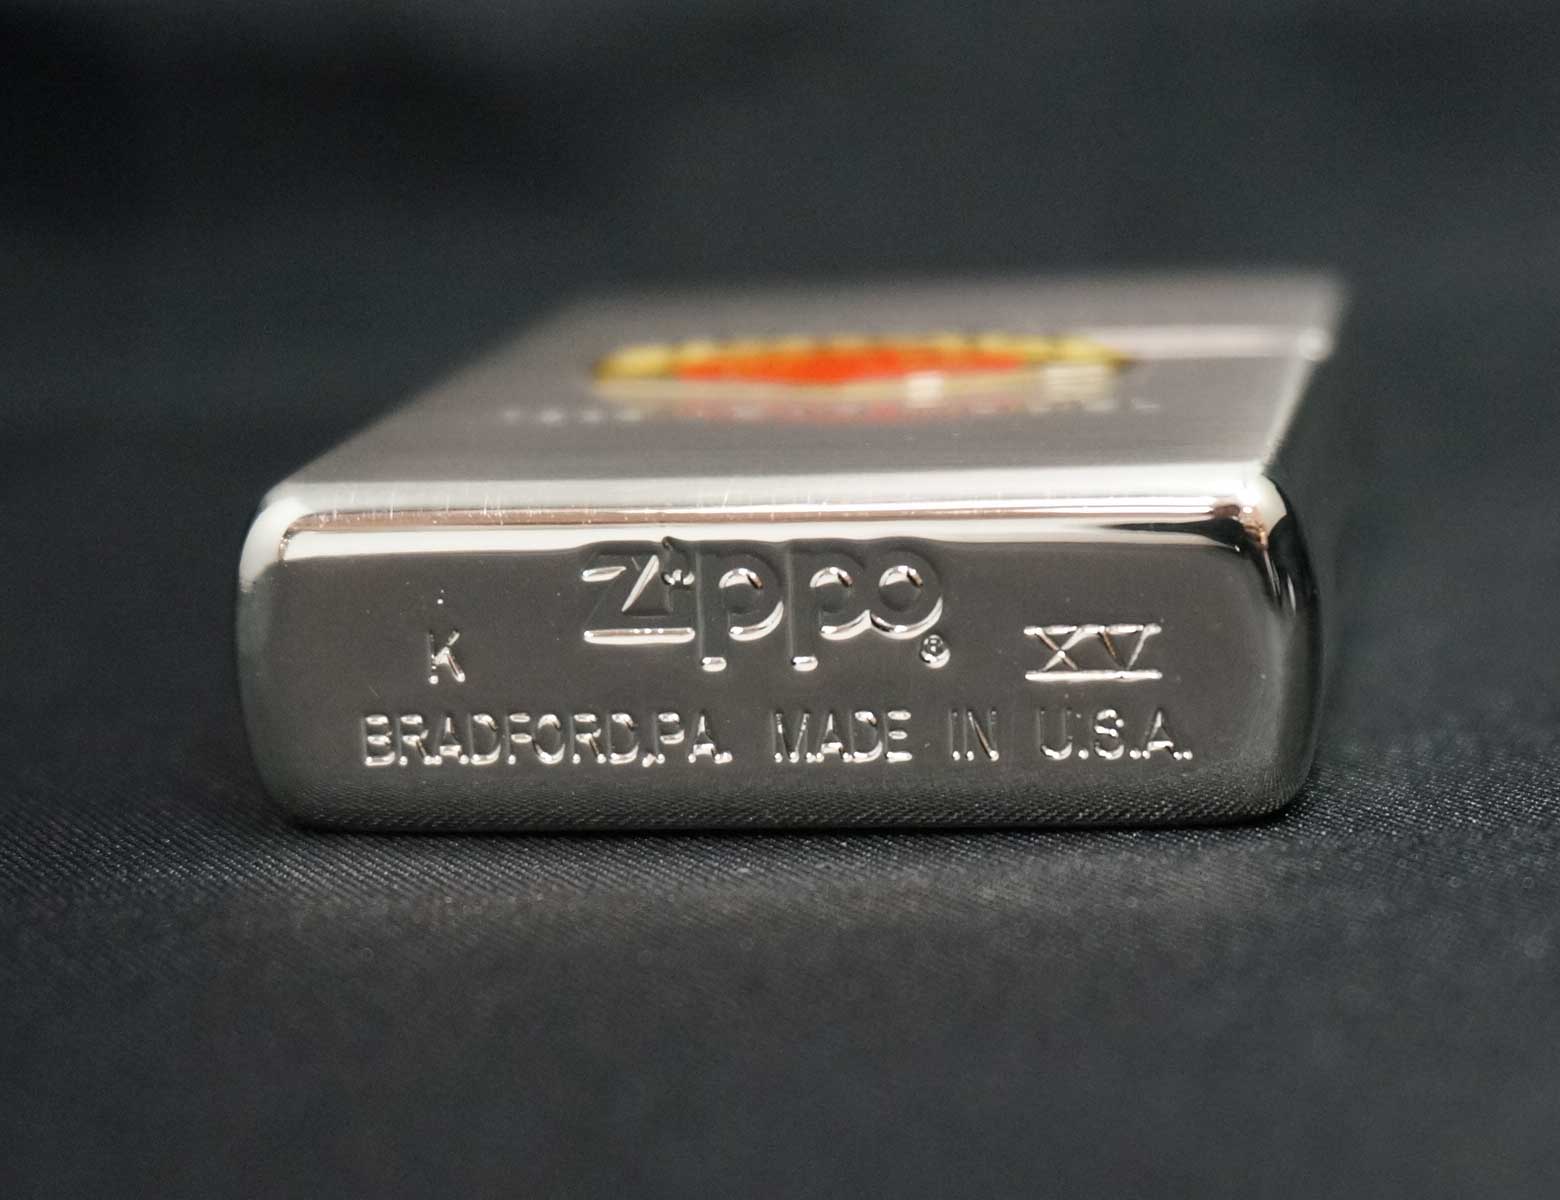 画像: zippo TOYOTA S800 1998年製造